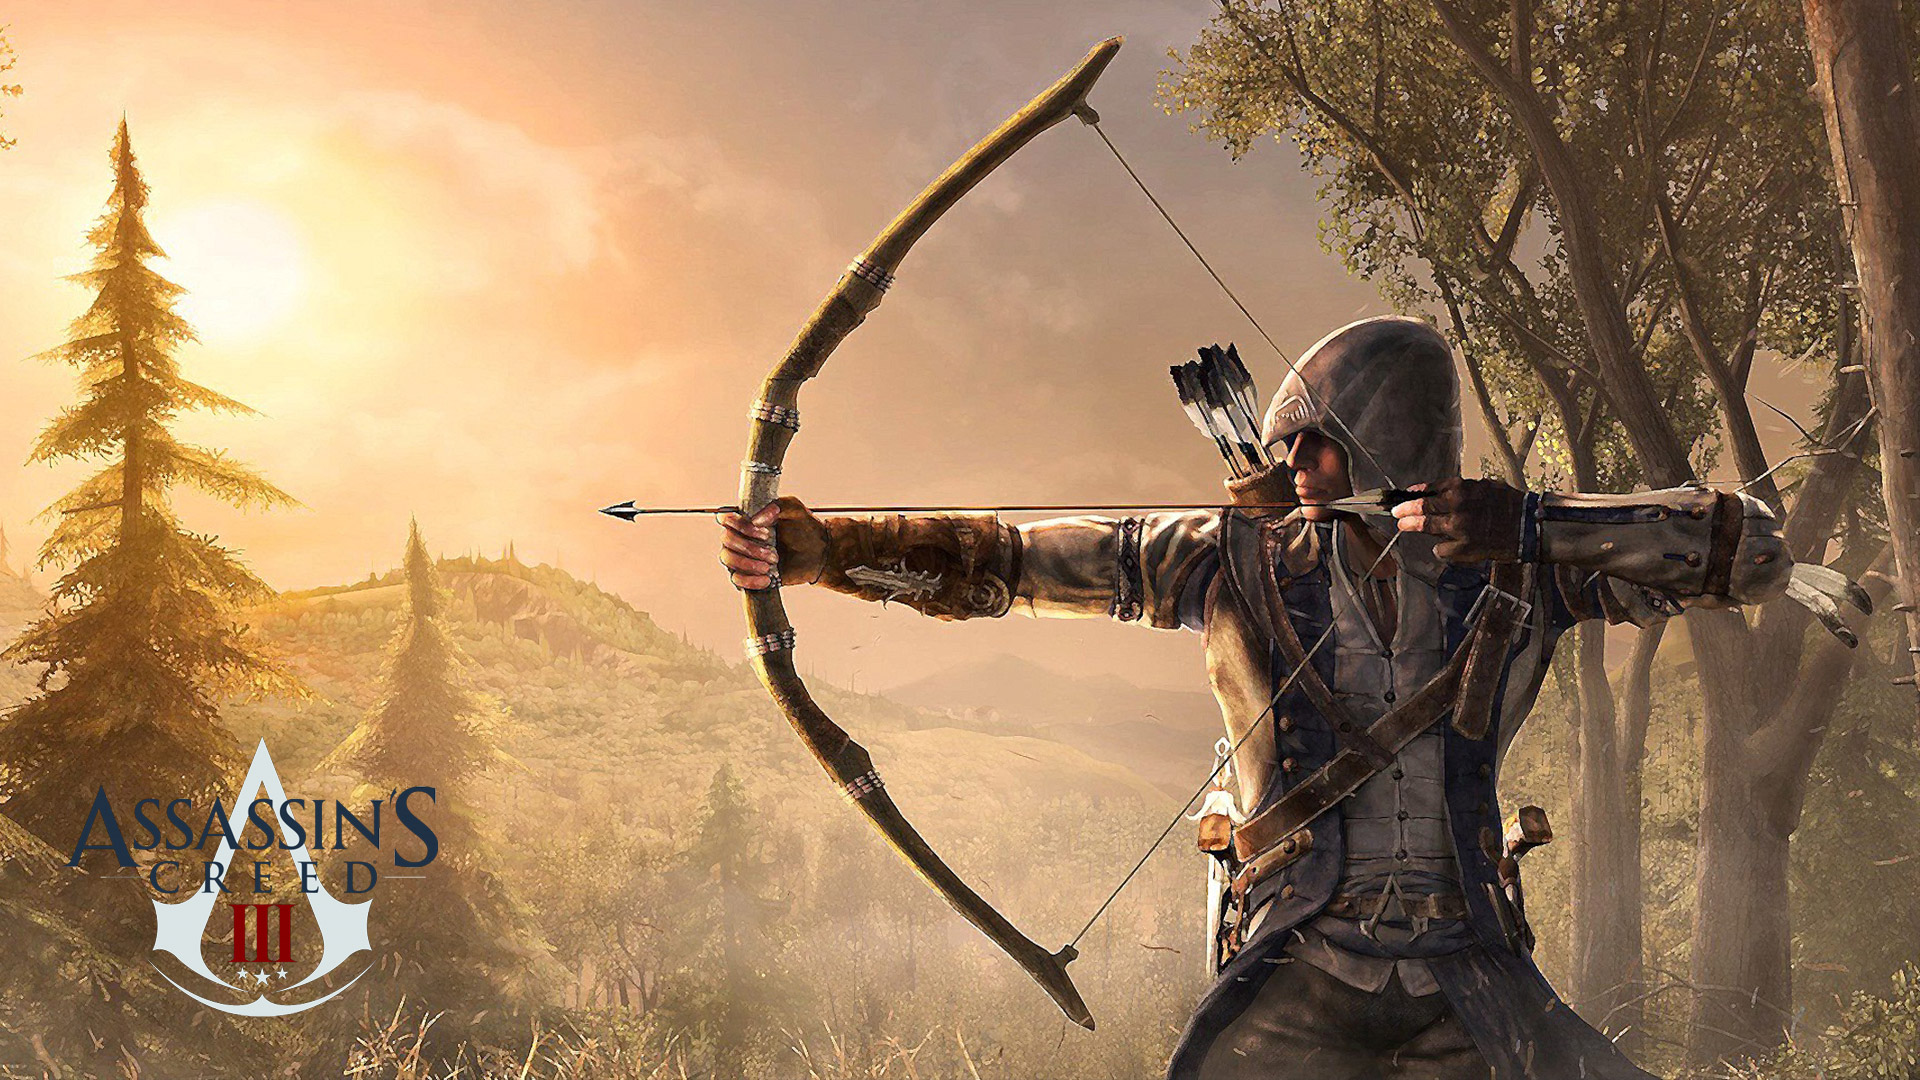 Assassins - Assassins Creed Wallpaper 1080p , HD Wallpaper & Backgrounds